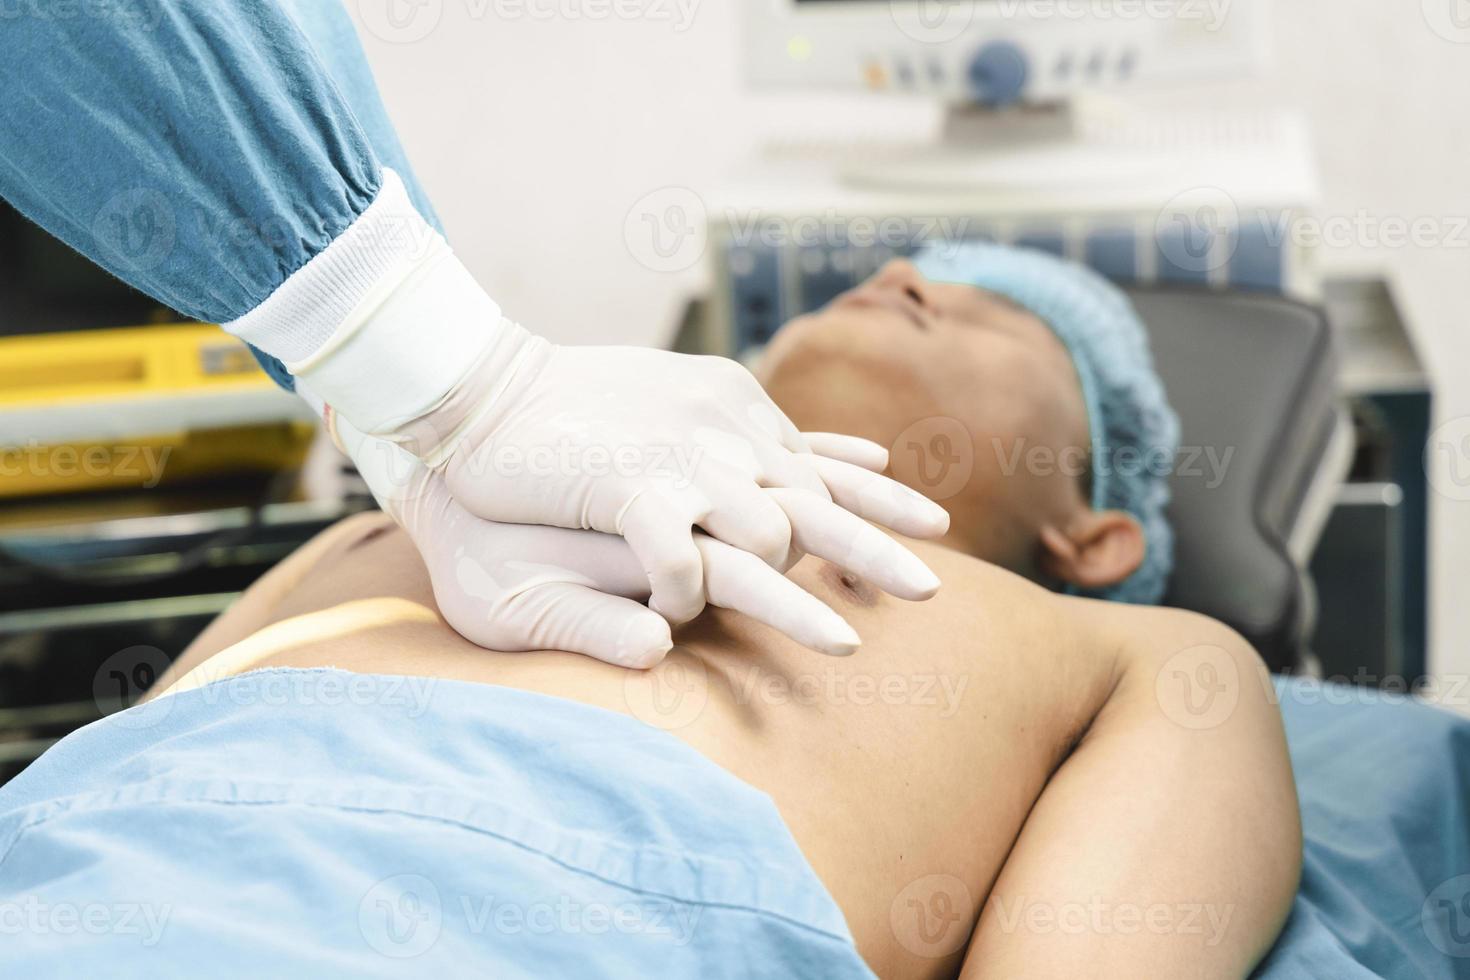 cirurgião e assistente fazendo cpr no paciente na sala de cirurgia. emergência de primeiros socorros - ressuscitação cardiopulmonar foto